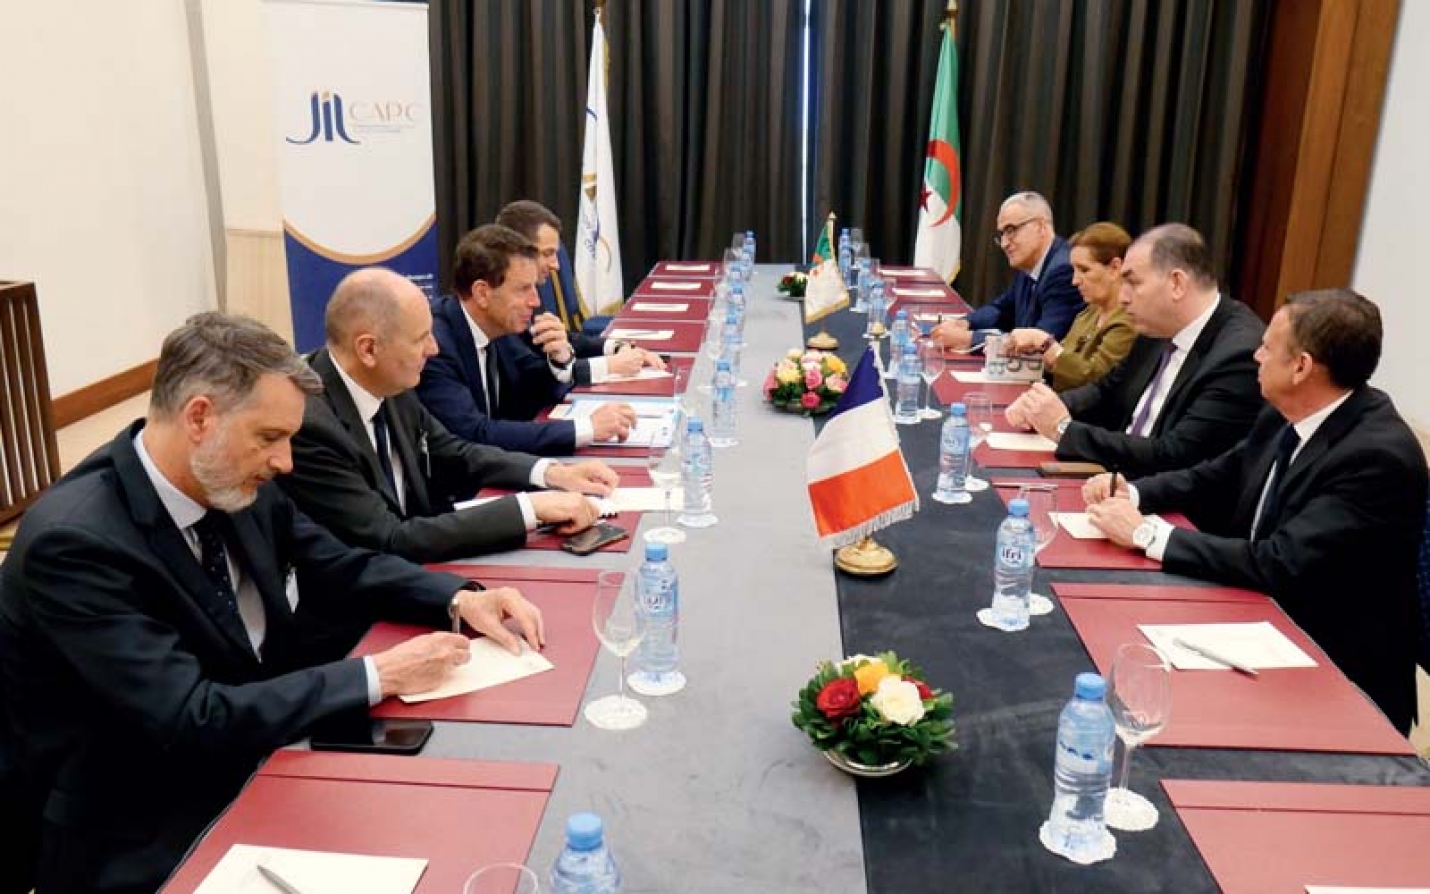 France-Algérie : D’un partenariat économique en mode « Je t’aime... moi non plus », au « New deal » gagnant-gagnant ?